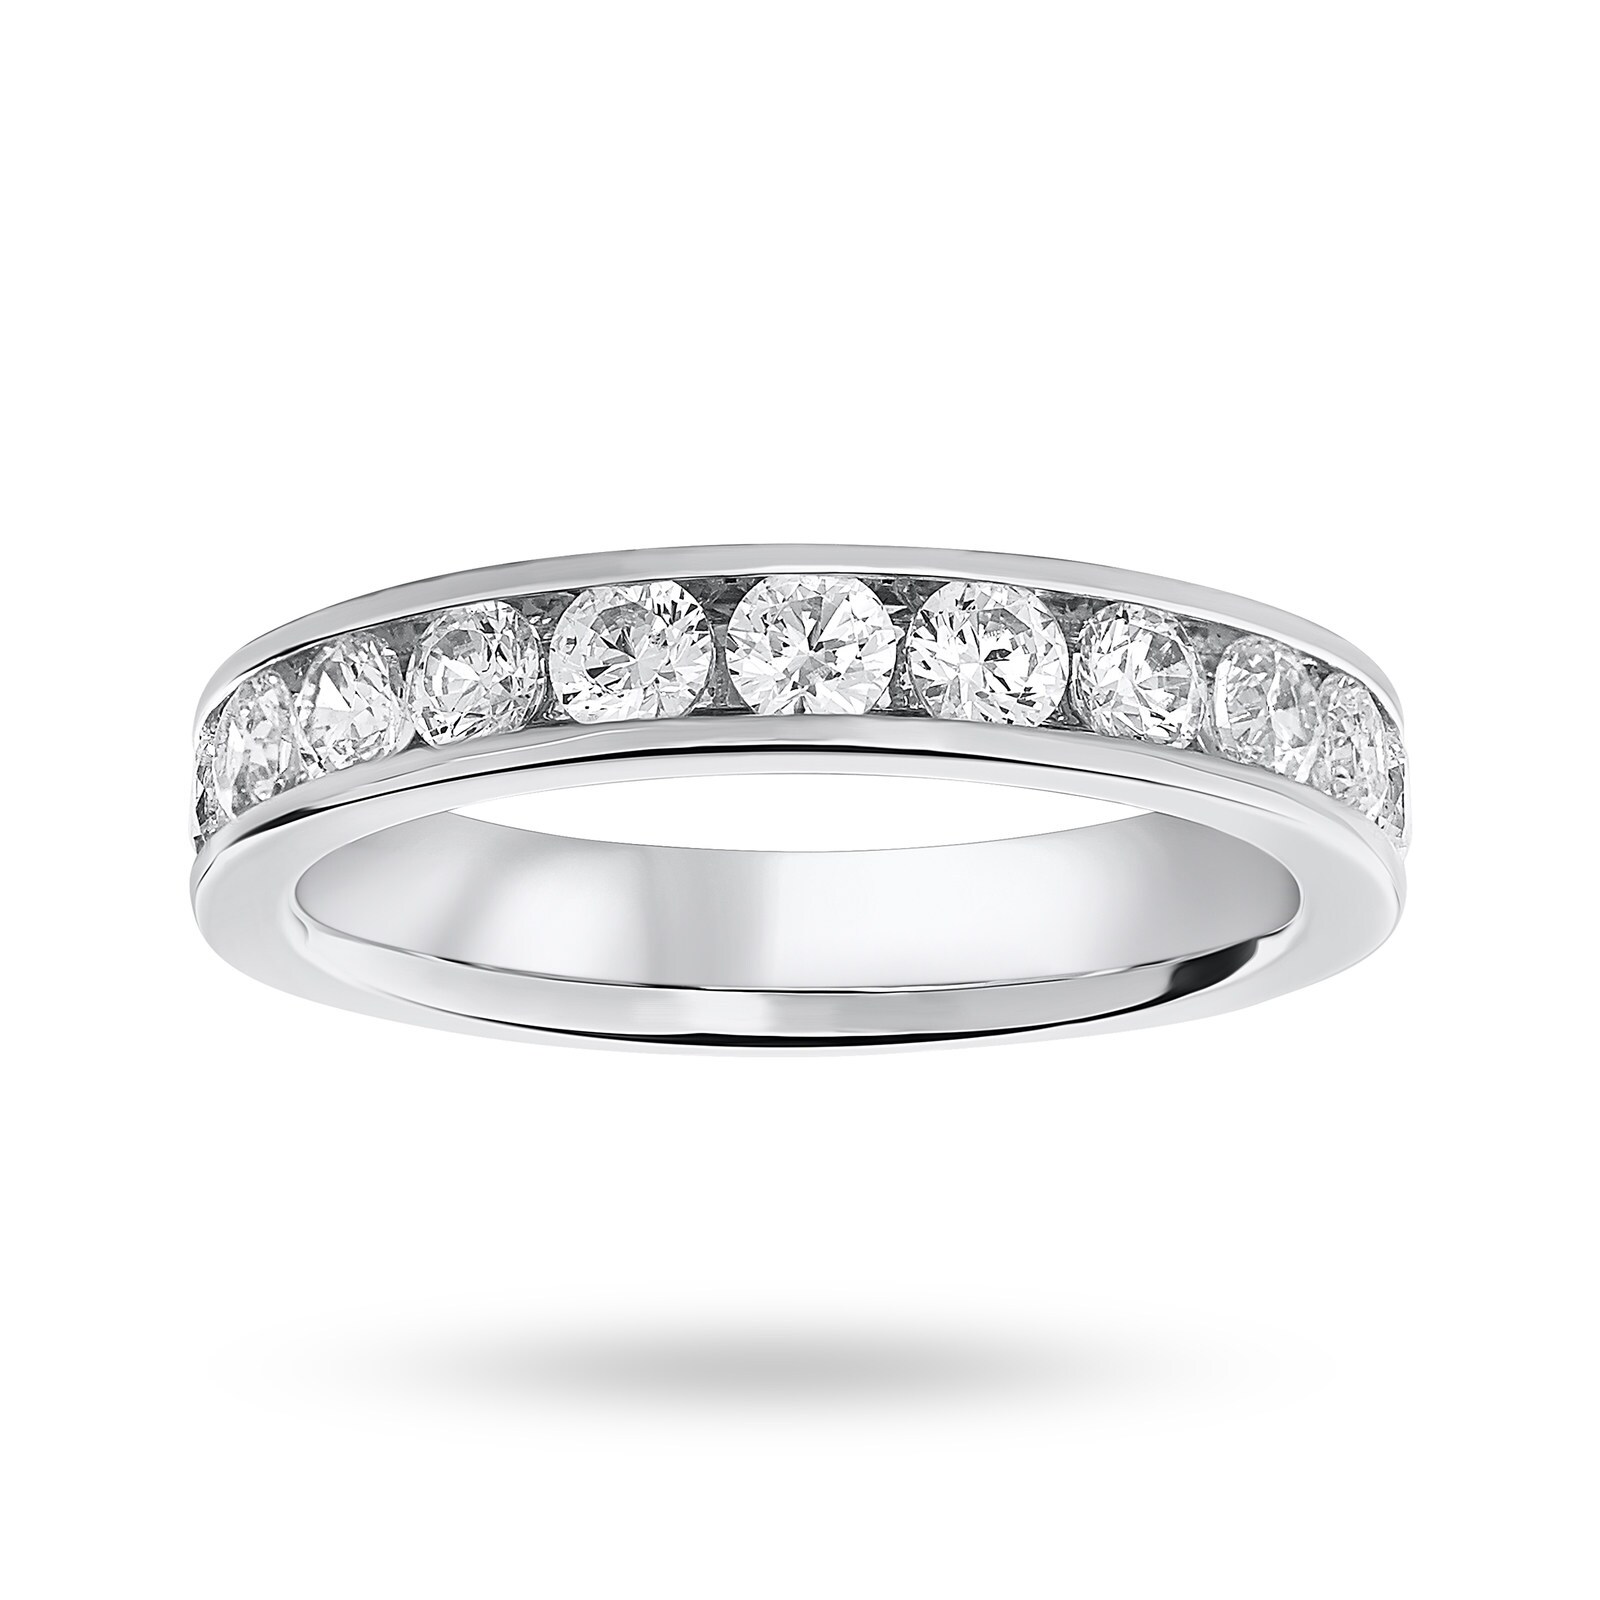 Platinum 1.00 Carat Brilliant Cut Half Eternity Ring - Ring Size M